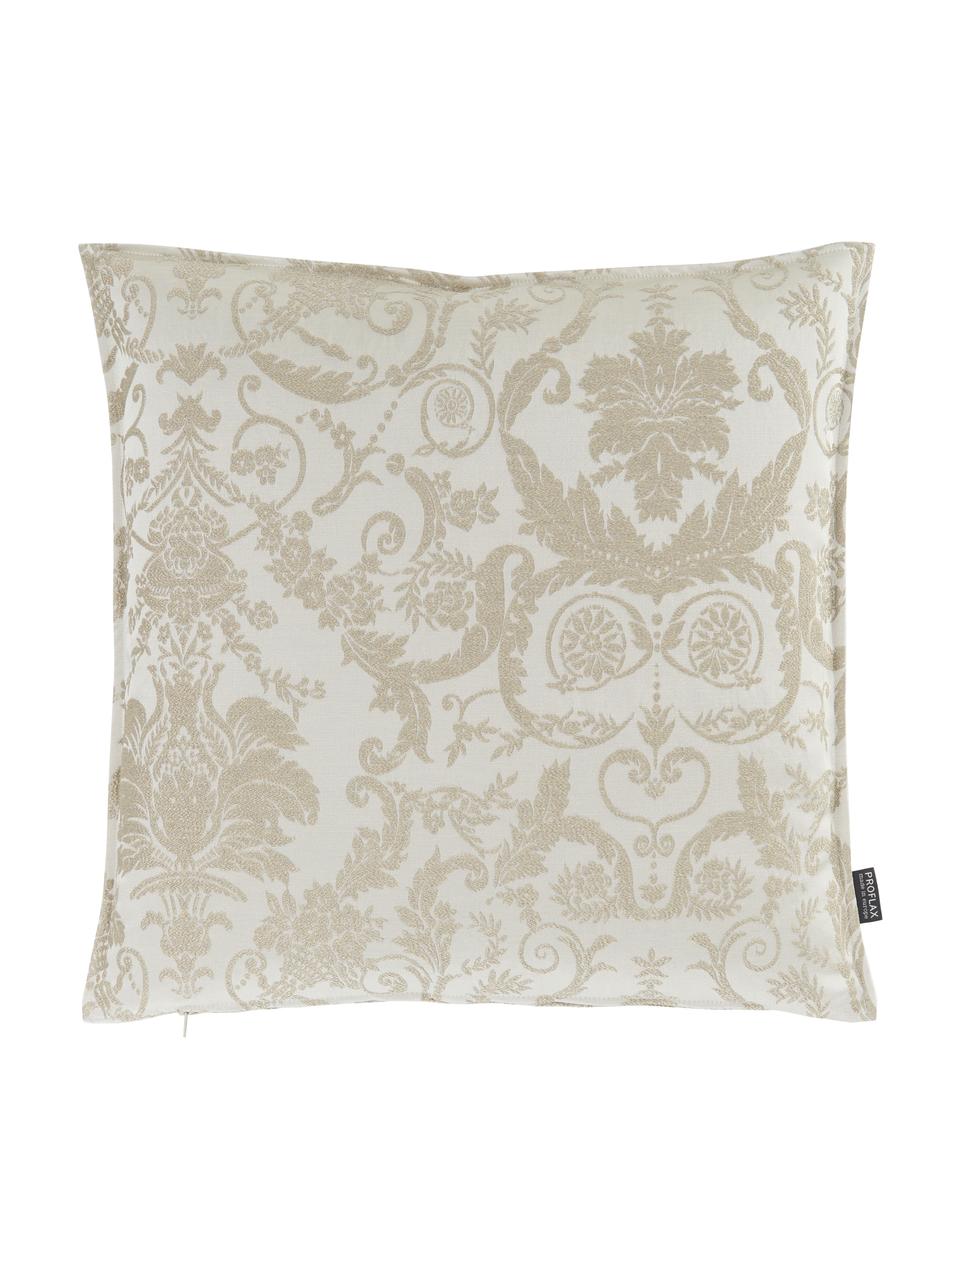 Glinsterende kussenhoes Astoria met ornament borduurwerk, 75% polyester, 25% katoen, Beige, B 50 x L 50 cm